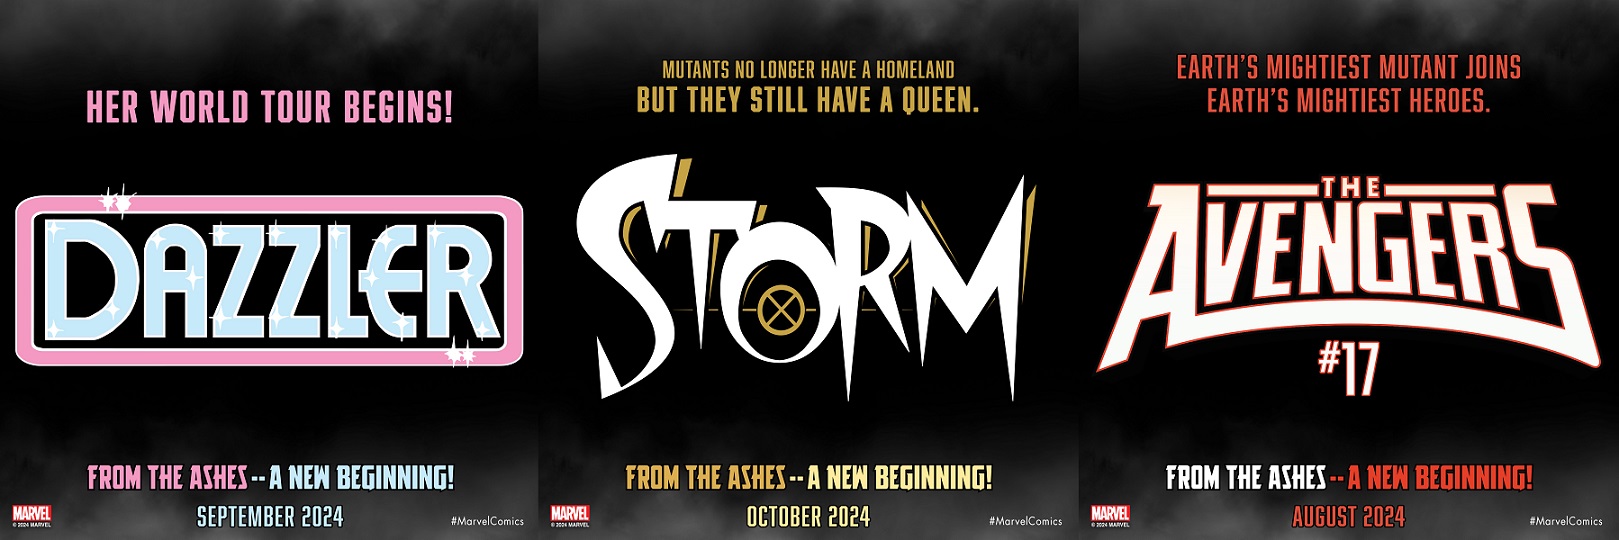 Teasers Dazzler, Storm, Avengers 17 -Boletín Marvel 236-